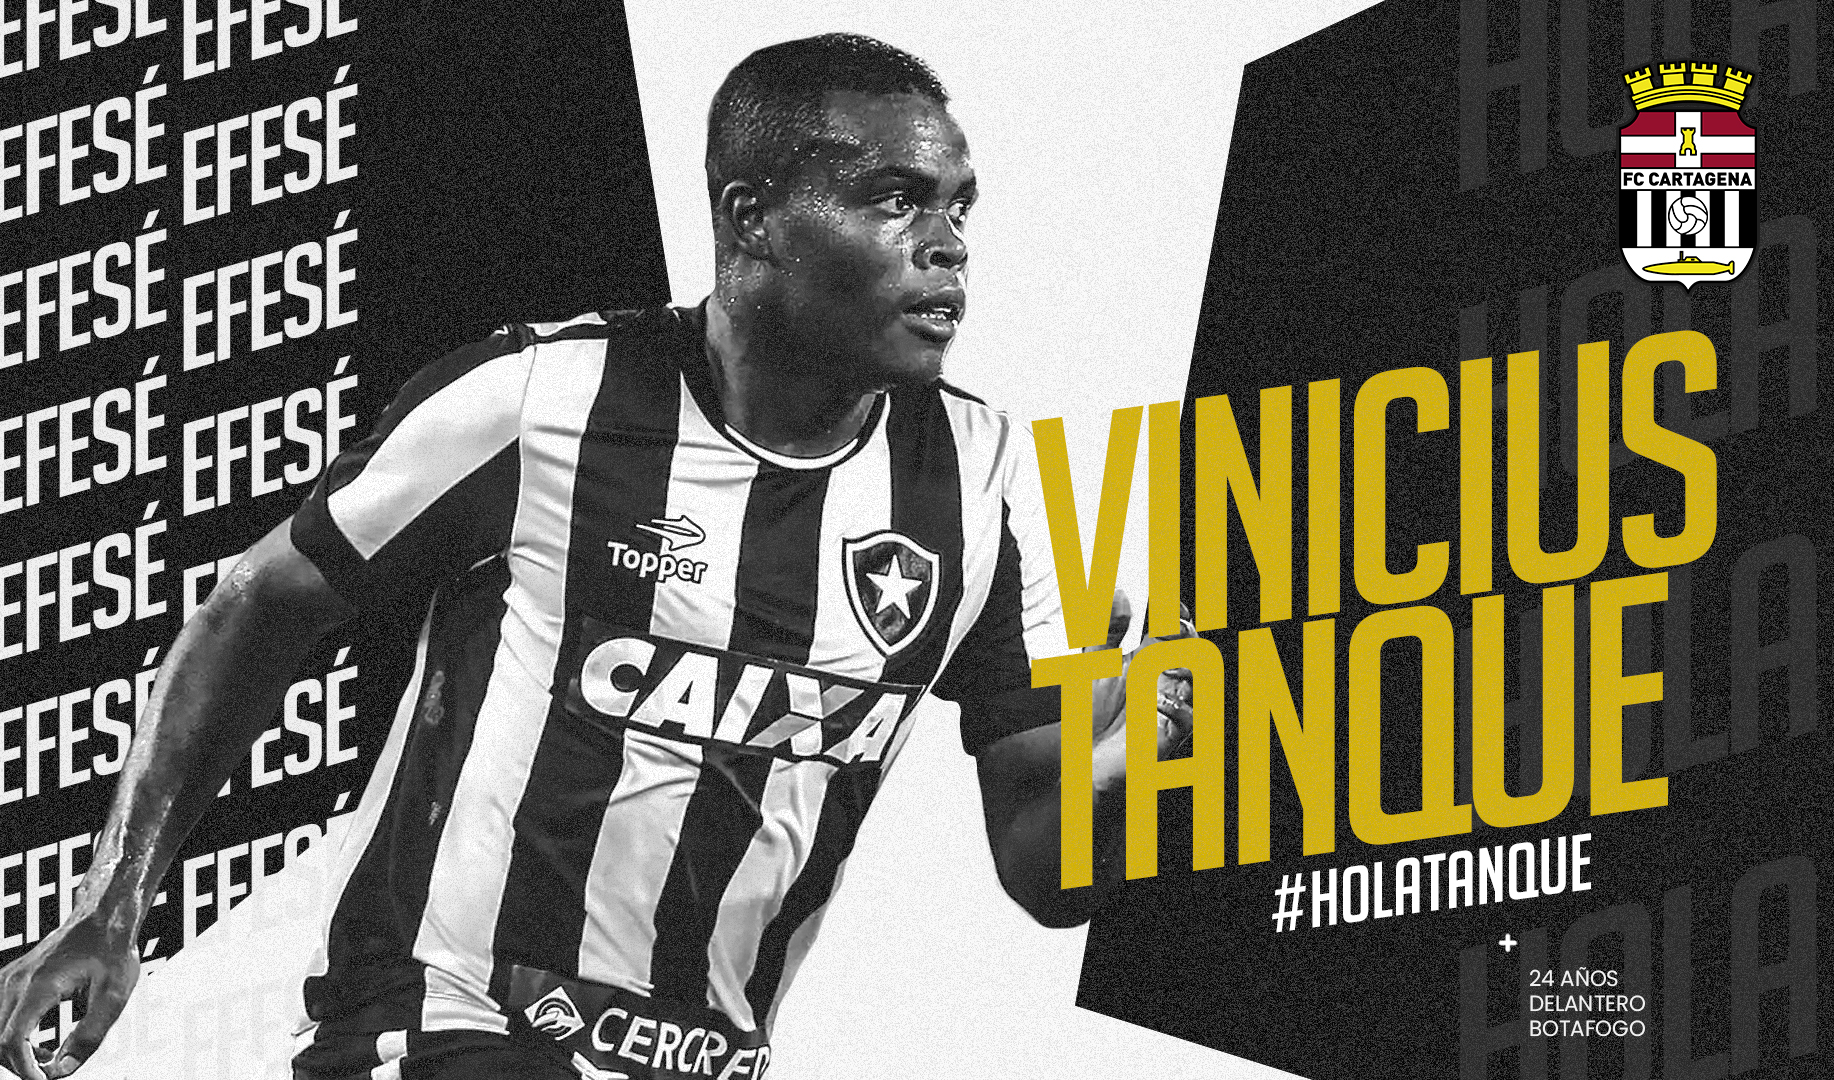 Outro ex-Botafogo que também foi anunciado pelo novo clube foi Vinícius Tanque. O centroavante, que já estava fora dos planos até do time reserva, treinava à parte e foi anunciado como novo reforço do Cartagena, que disputa a Segunda Divisão B, equivalente à terceira divisão local.